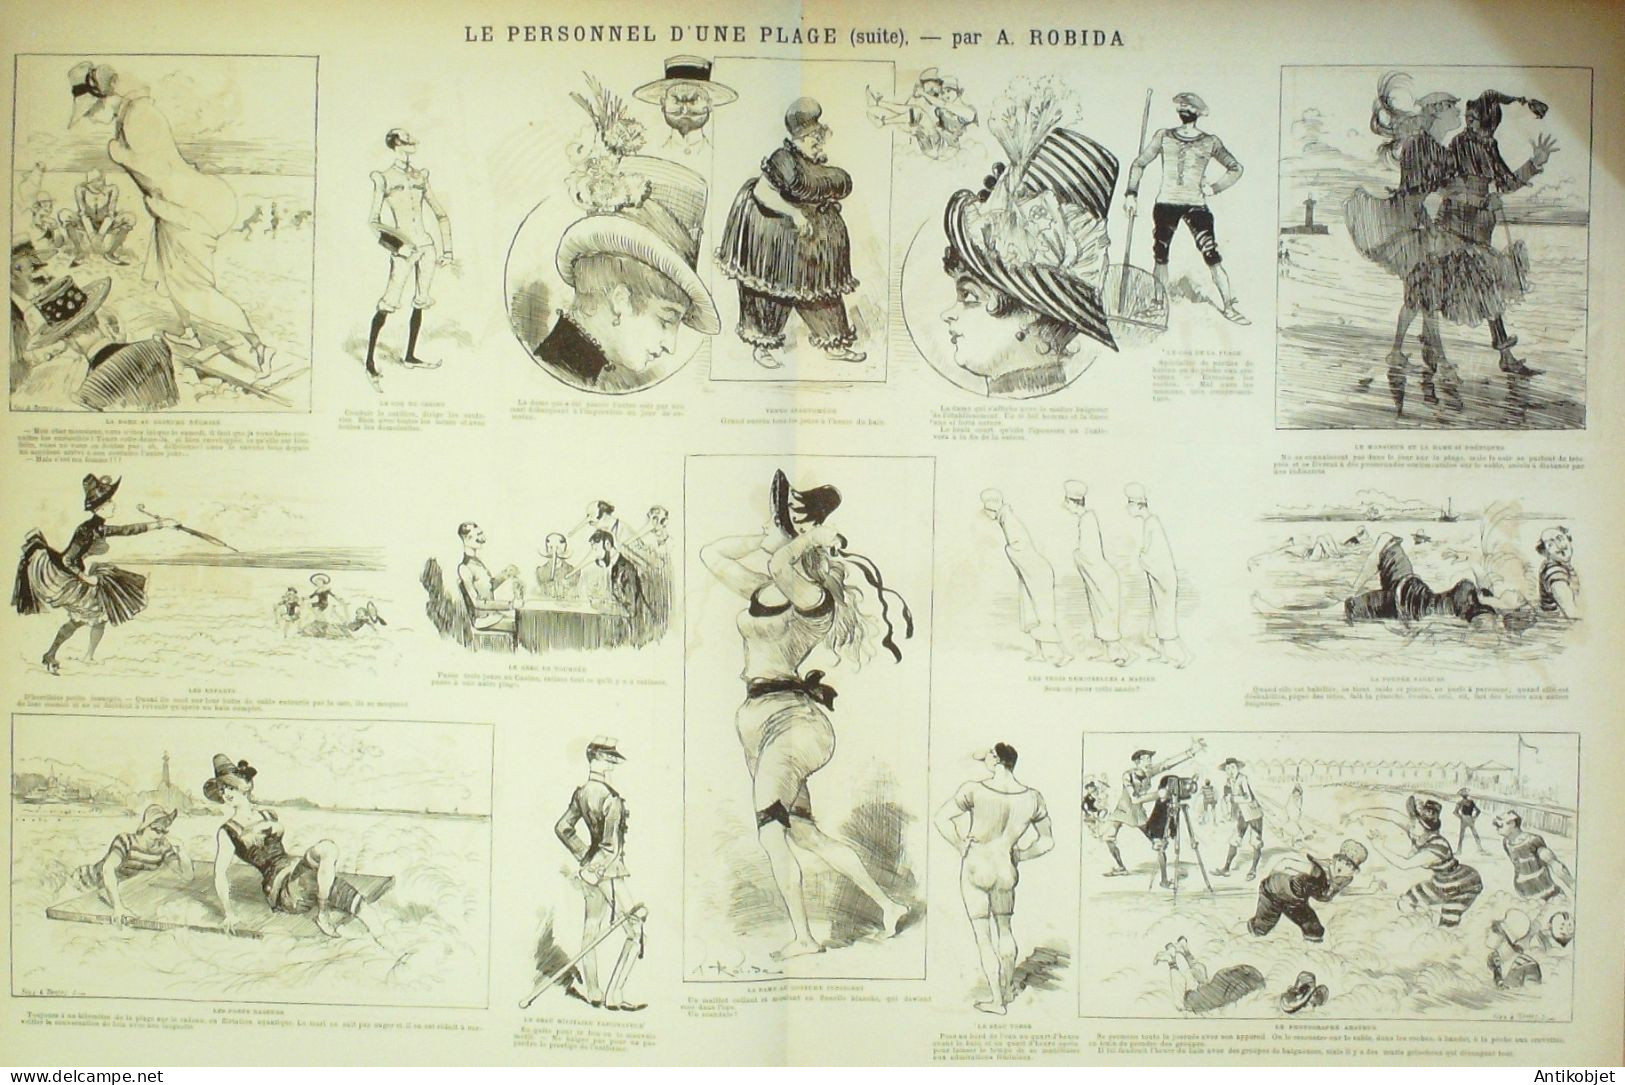 La Caricature 1886 N°344 Personnel De Plage Robida Draner Sorel Trock - Magazines - Before 1900